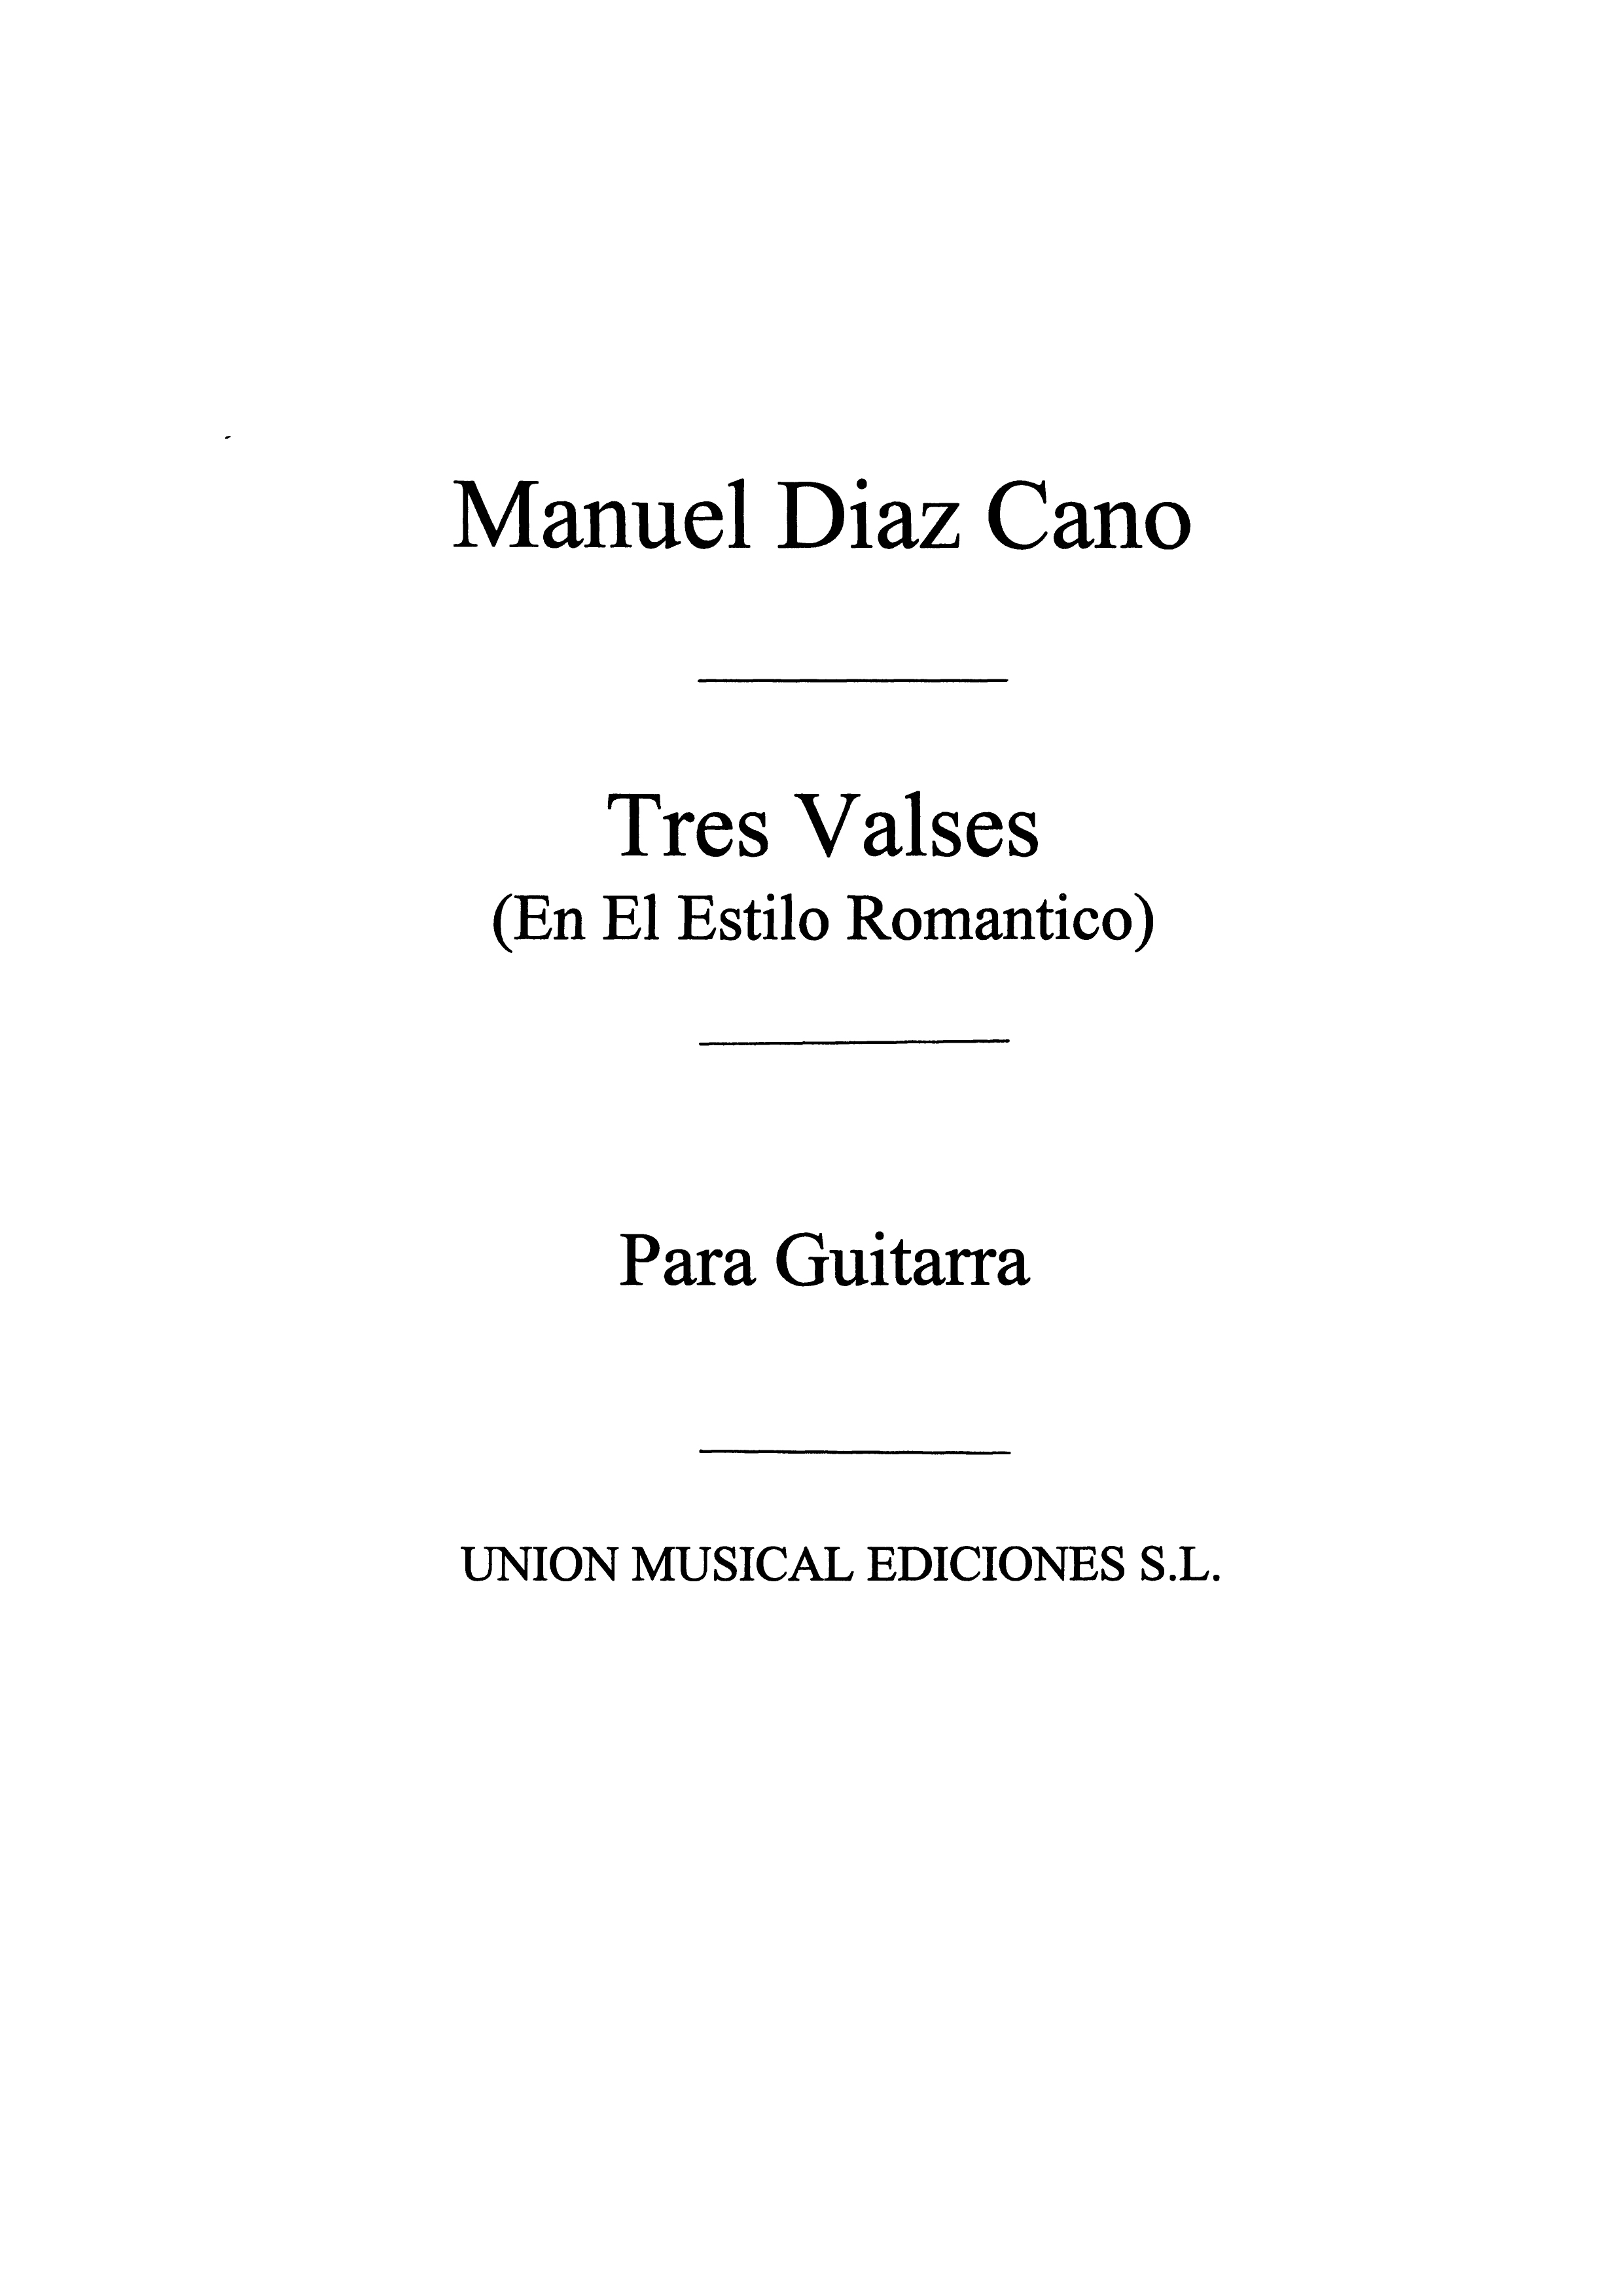 Manuel Diaz Cano: Tres Valses En El Estilo Romantico: Guitar: Instrumental Work